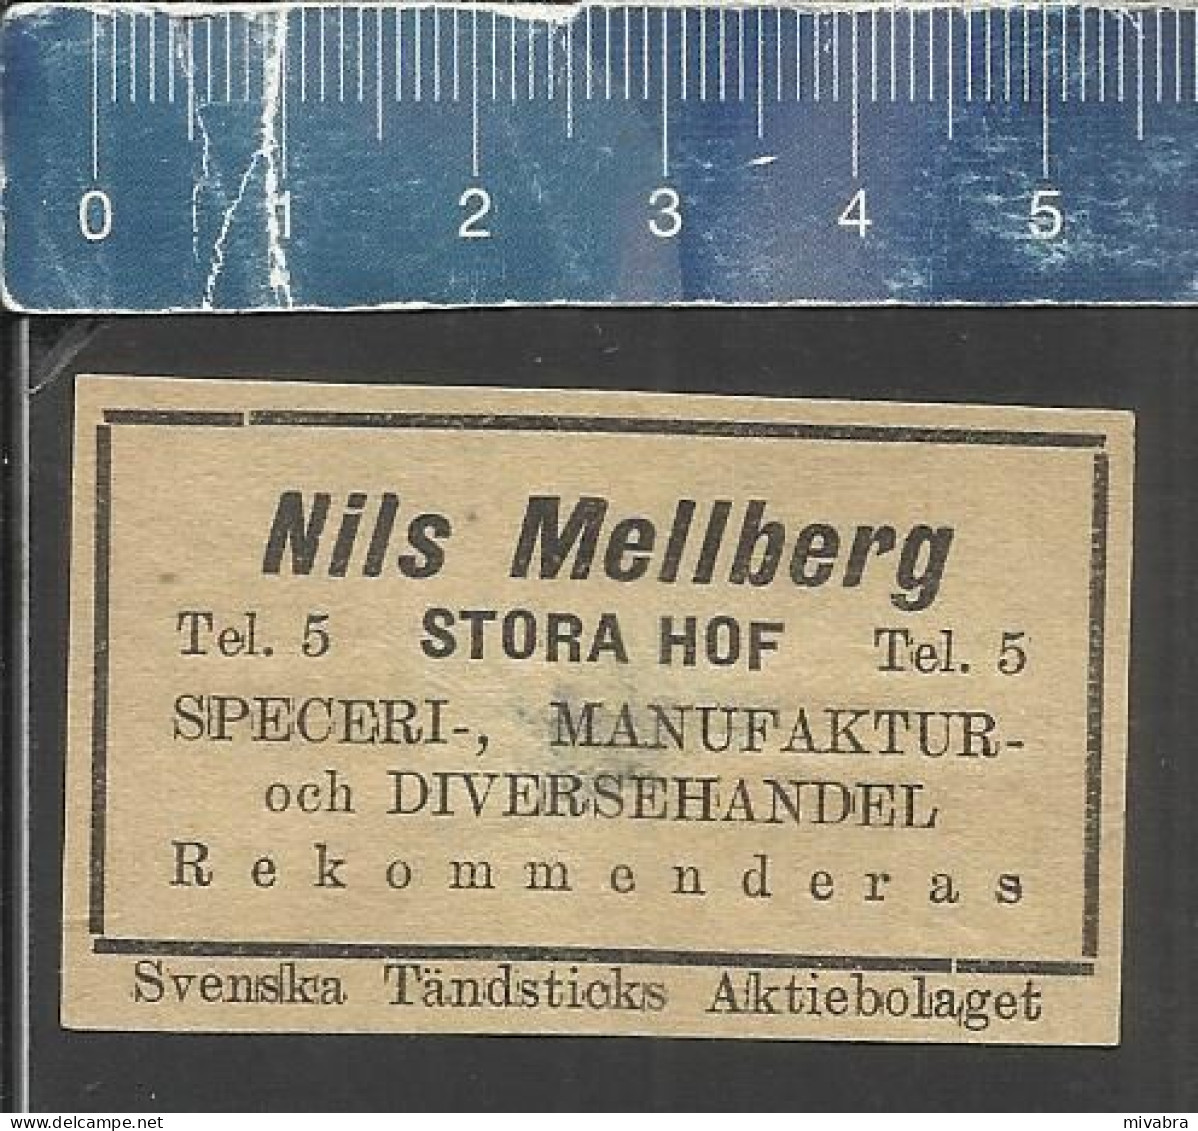 NILS MELLBERG - STORA HOF -  OLD VINTAGE ADVERTISING MATCHBOX LABEL MADE IN SWEDEN SVENSKA TÄNDSTICKS A B - Matchbox Labels